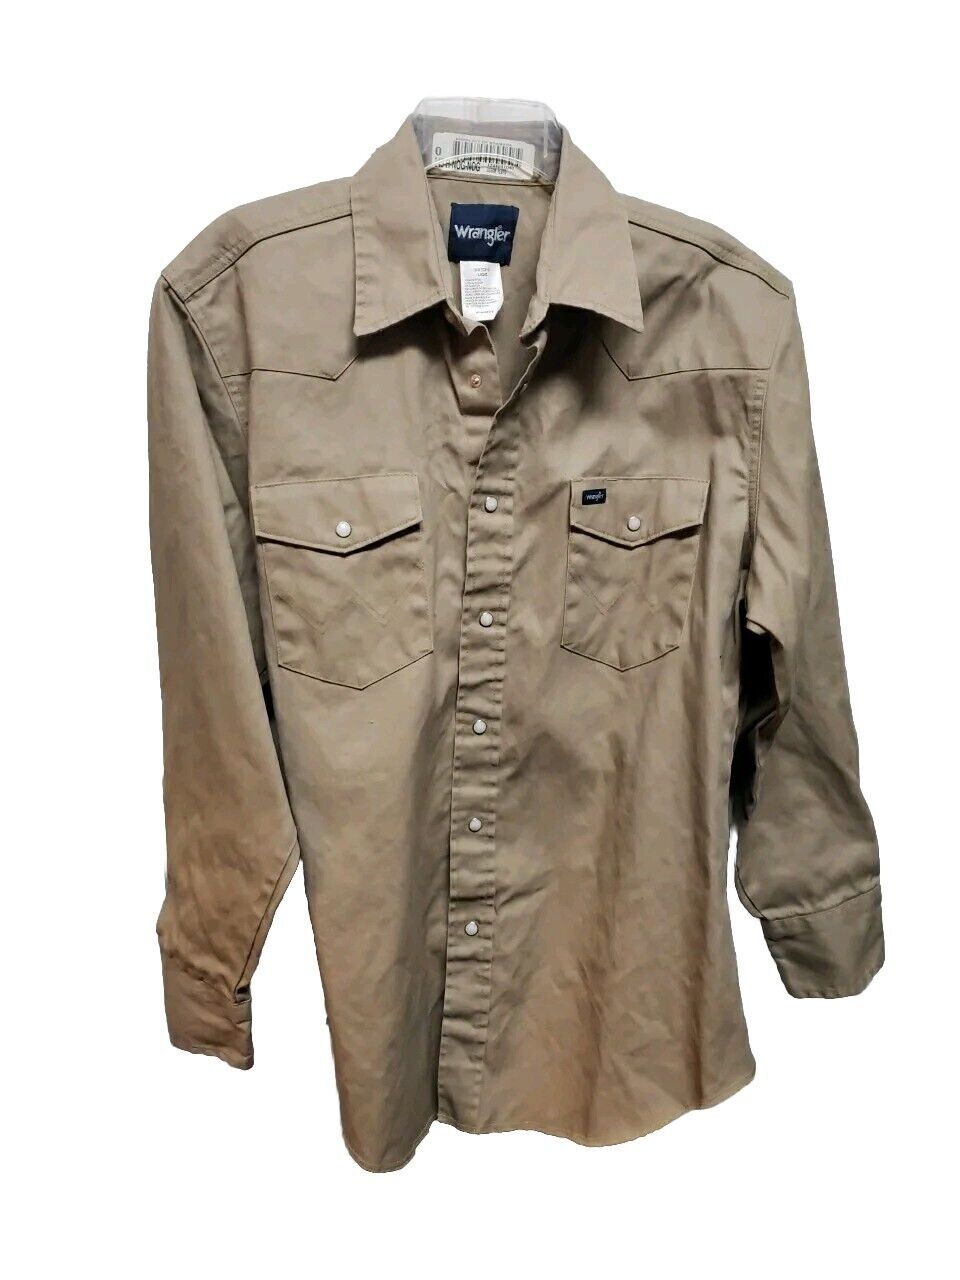 Wrangler Brushpopper Western Shirt Large Vintage … - image 1